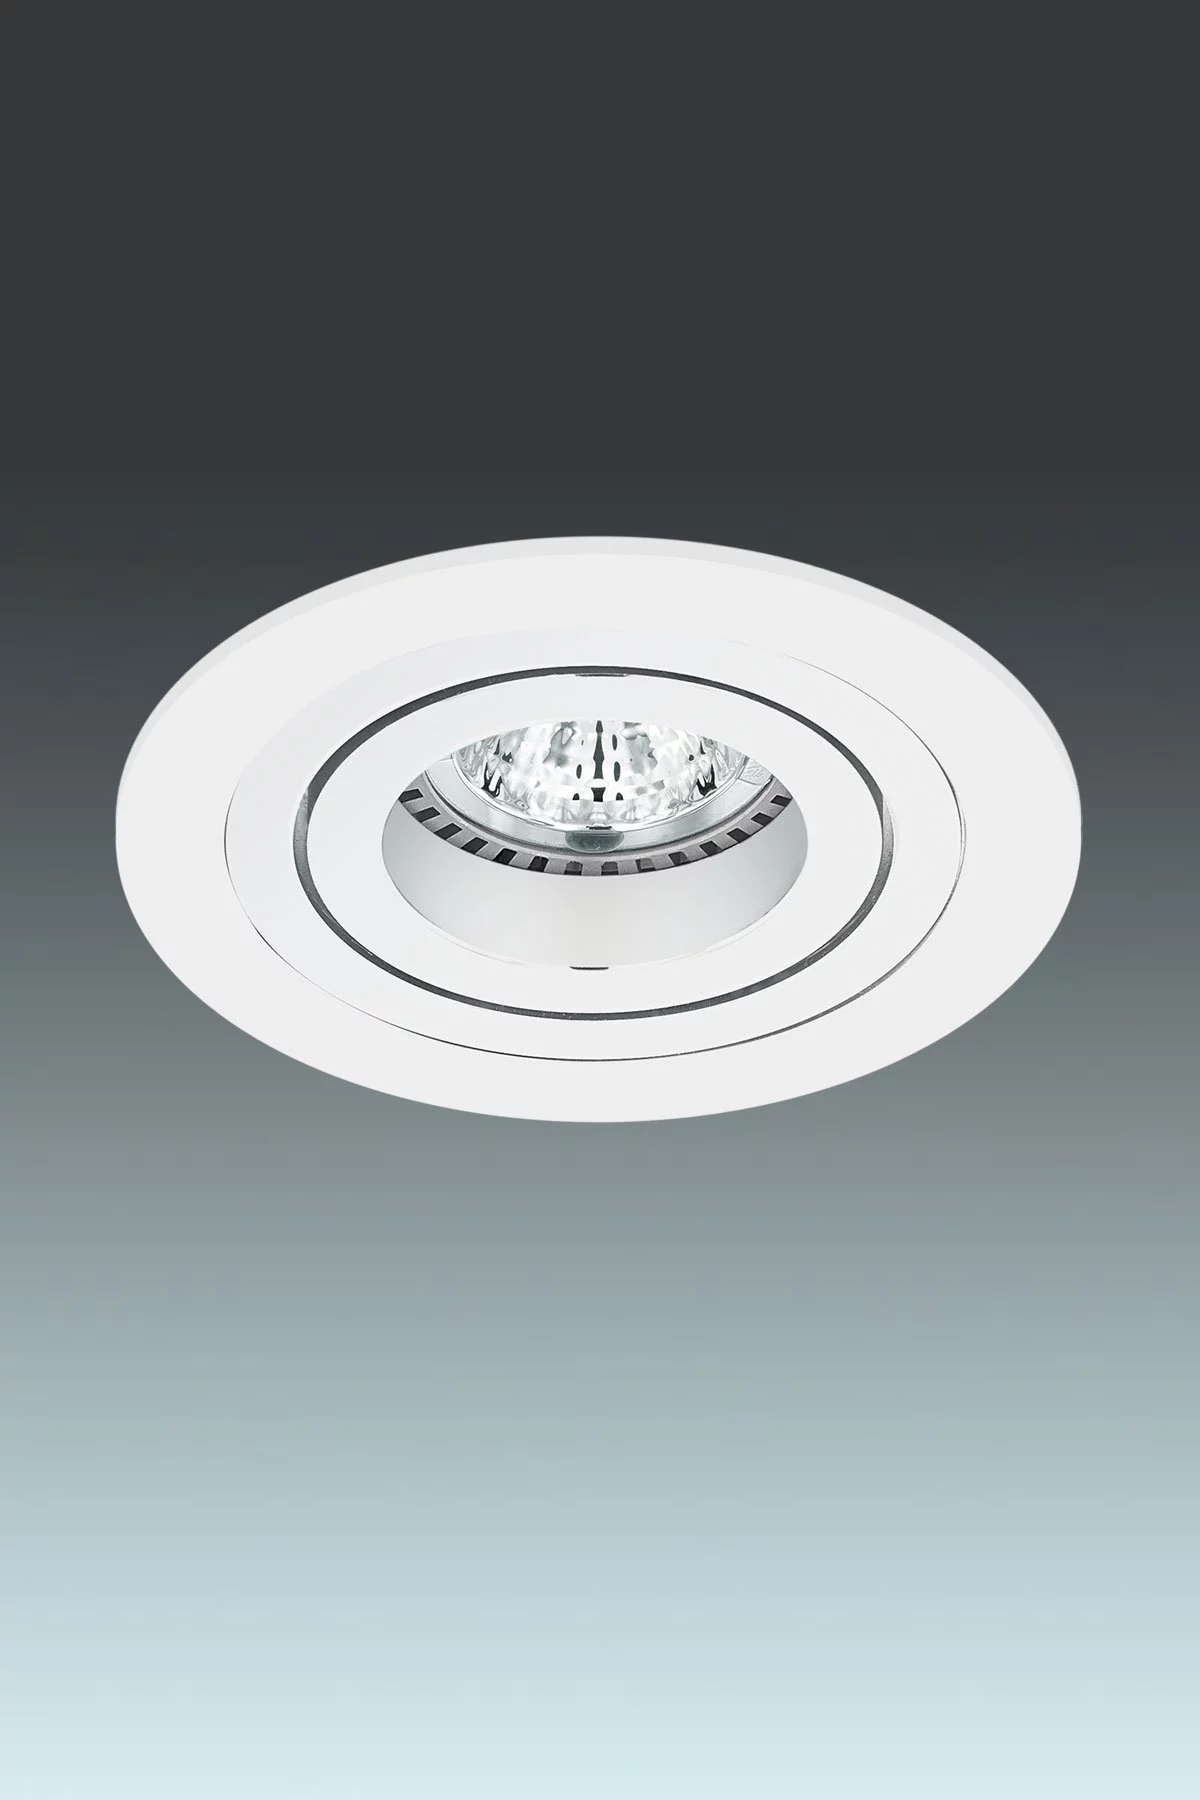   
                        Точечный светильник EGLO  (Австрия) 93501    
                         в стиле хай-тек.  
                        Тип источника света: светодиодные led, галогенные.                         Форма: круг.                                                                          фото 1